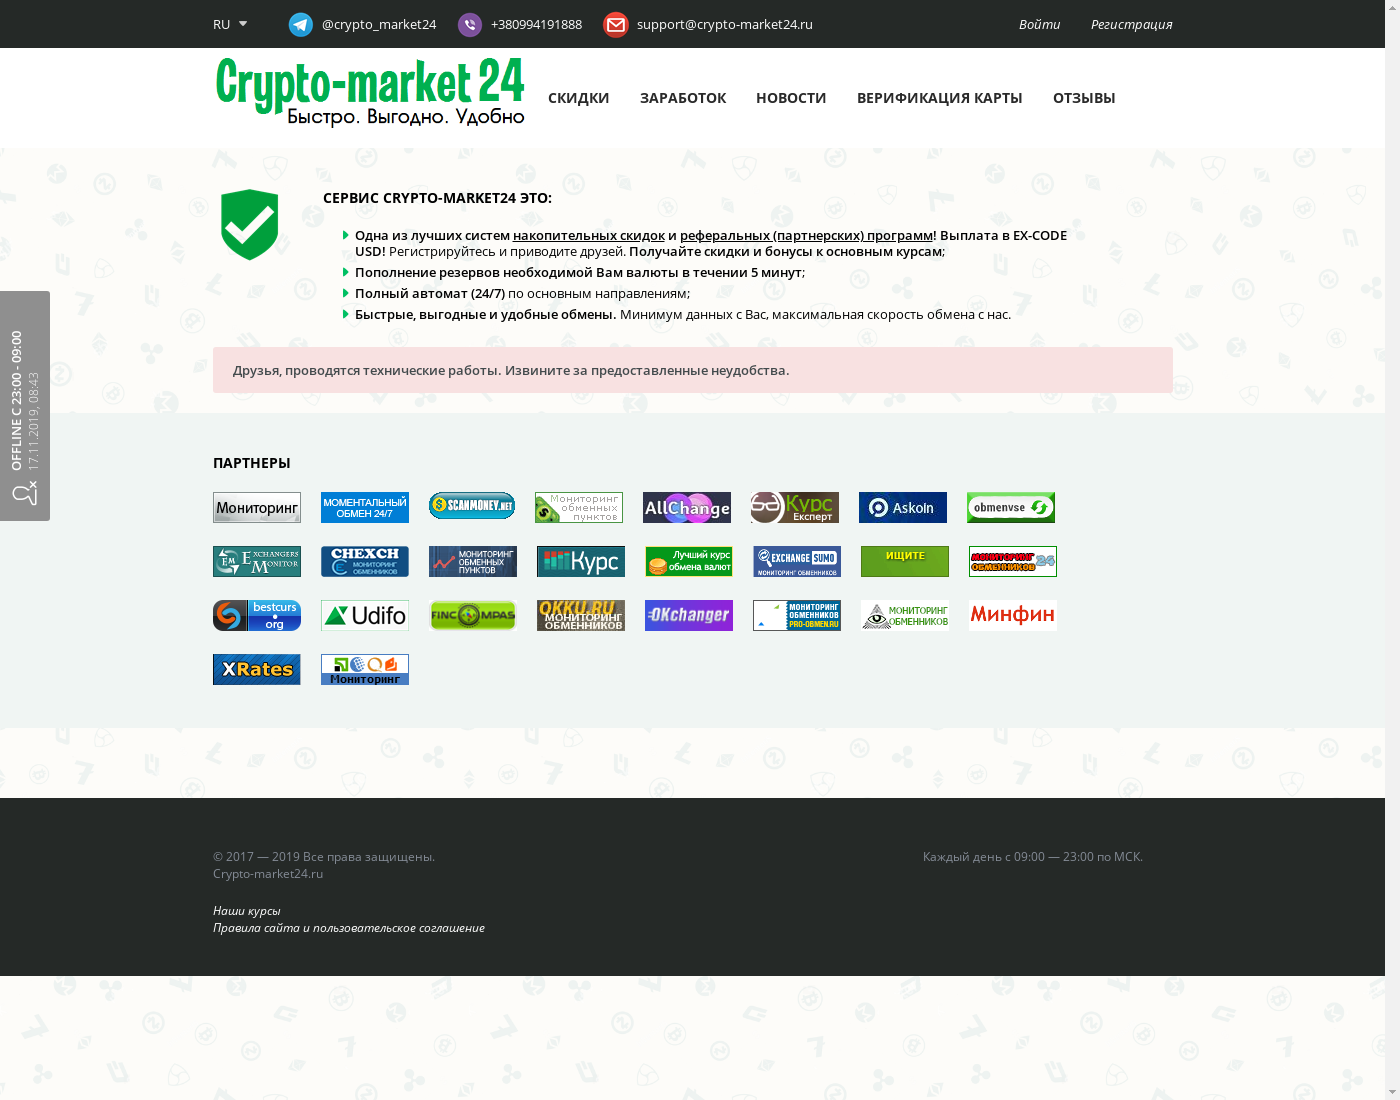 crypto-market24 интерфейс пользователя: домашняя страничка на языке — Русский